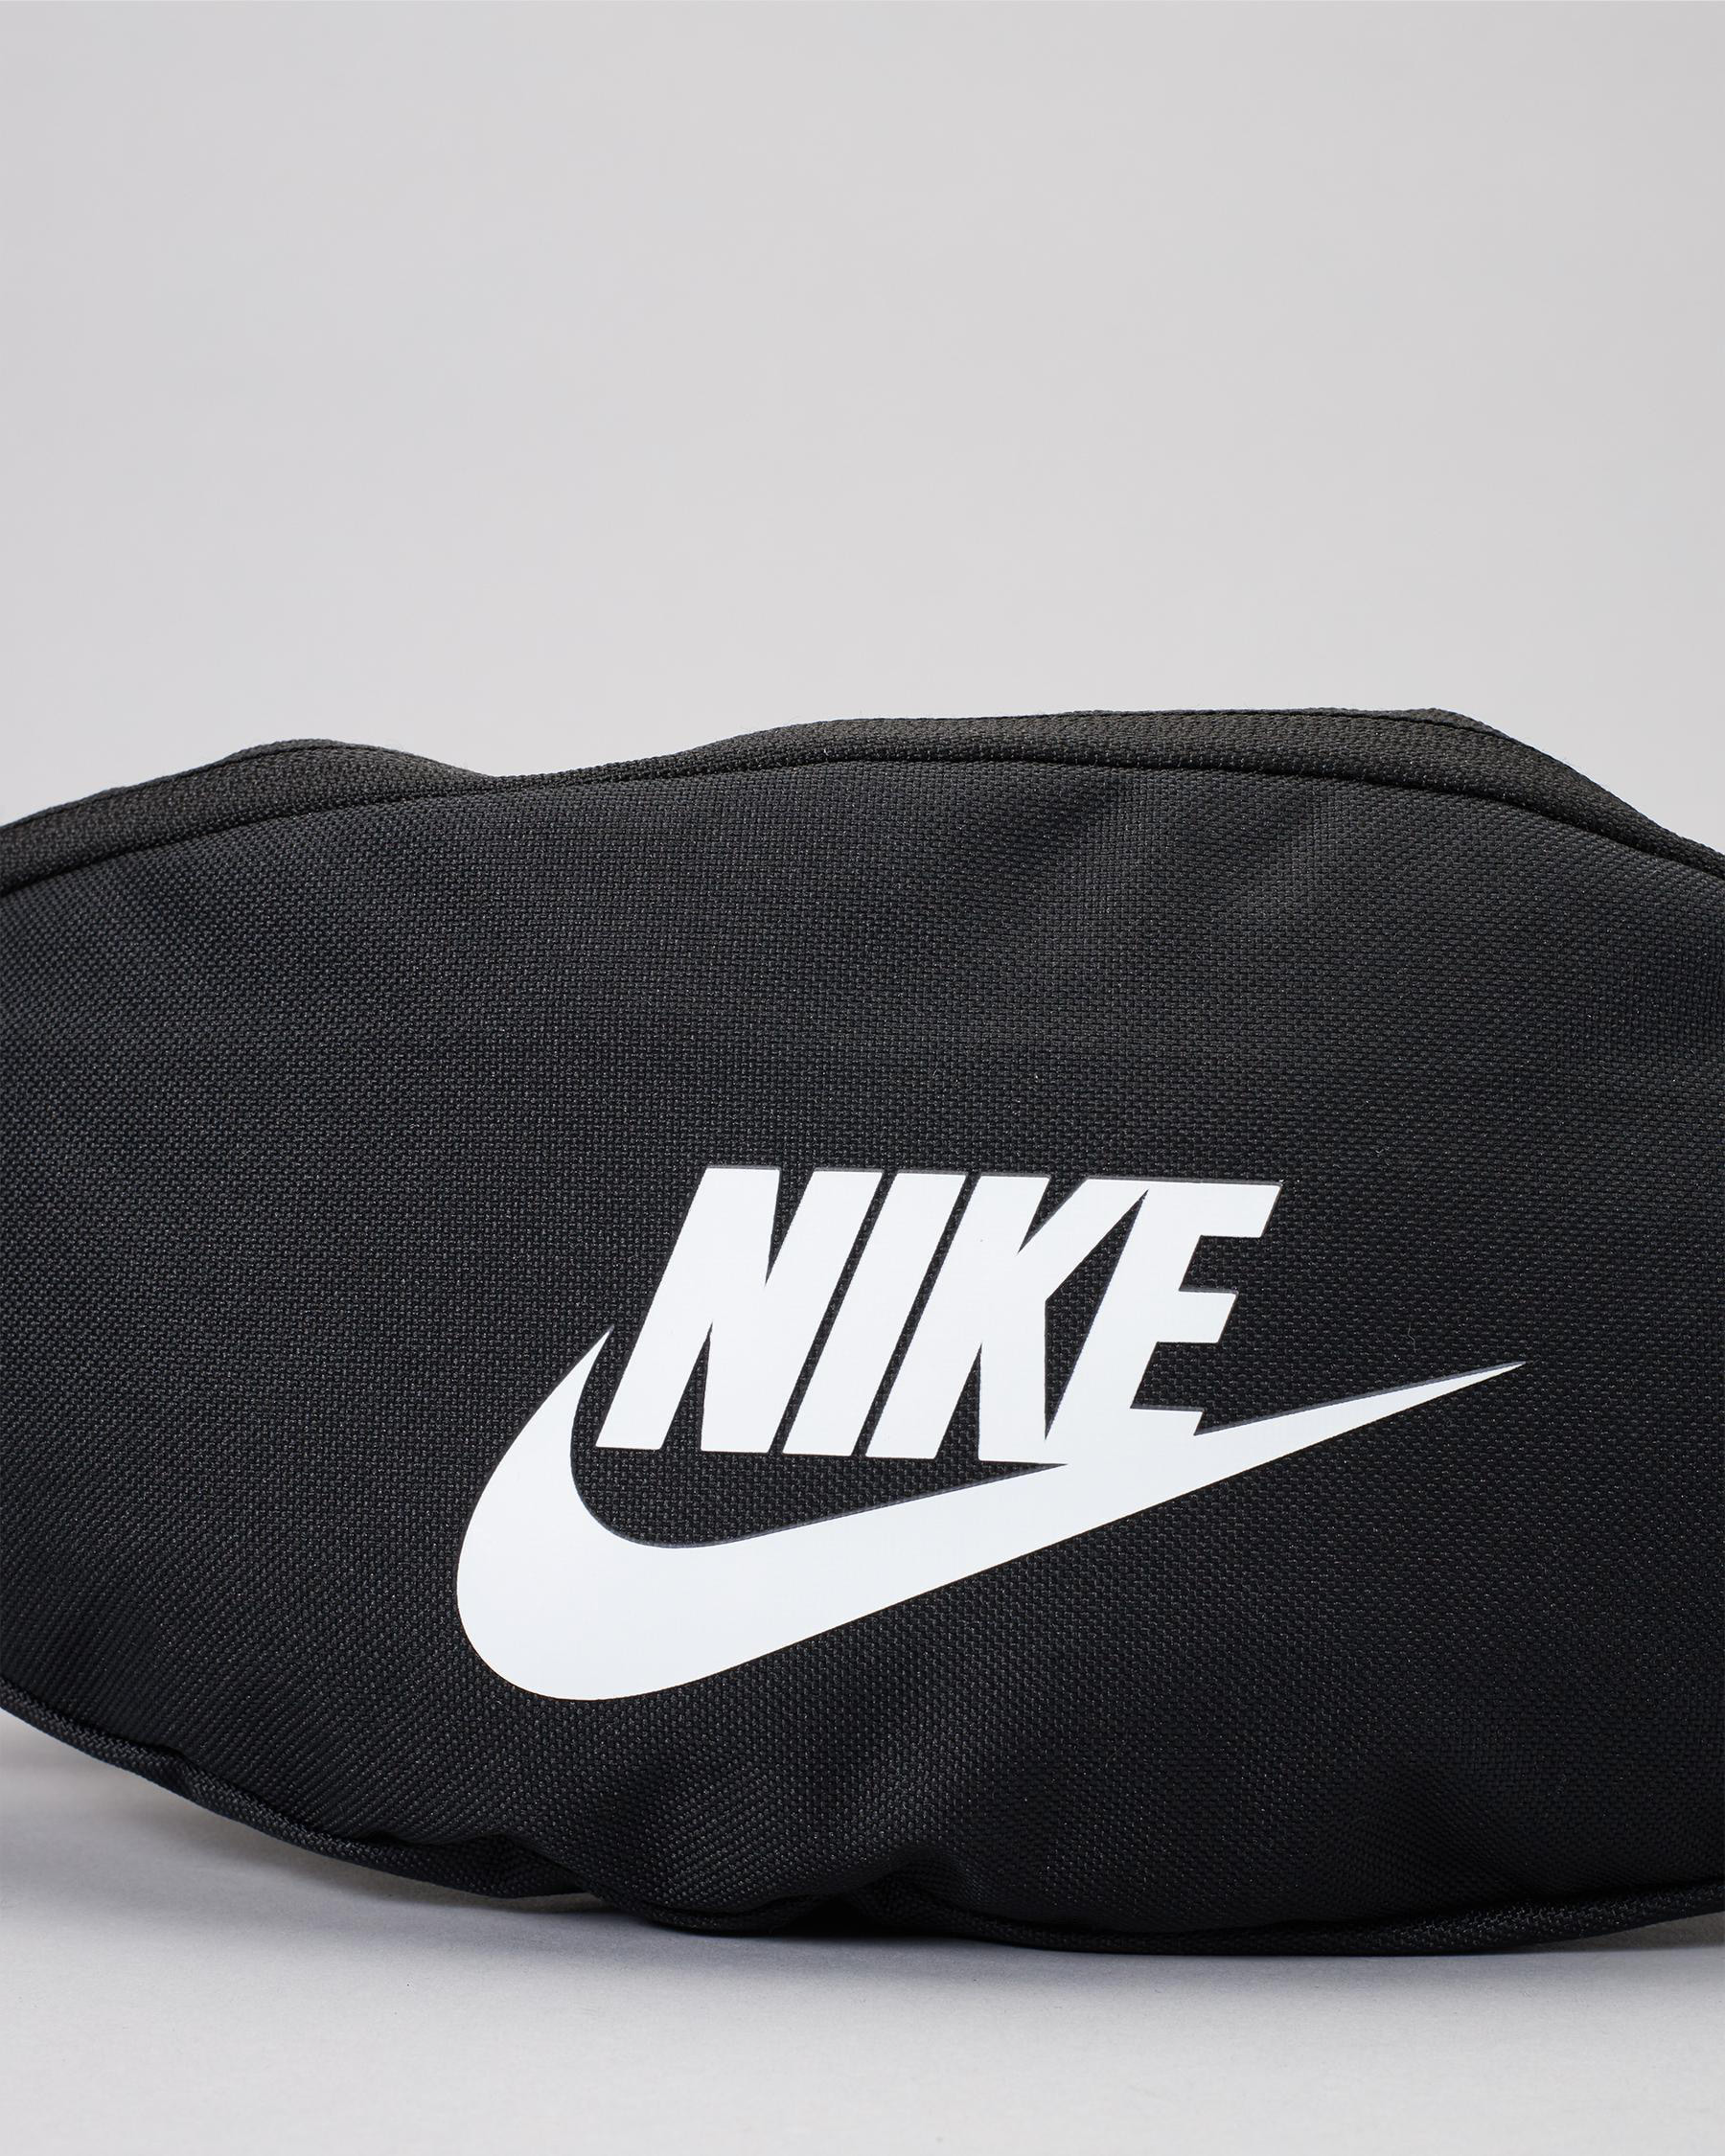 Nike Heritage bumbag in black